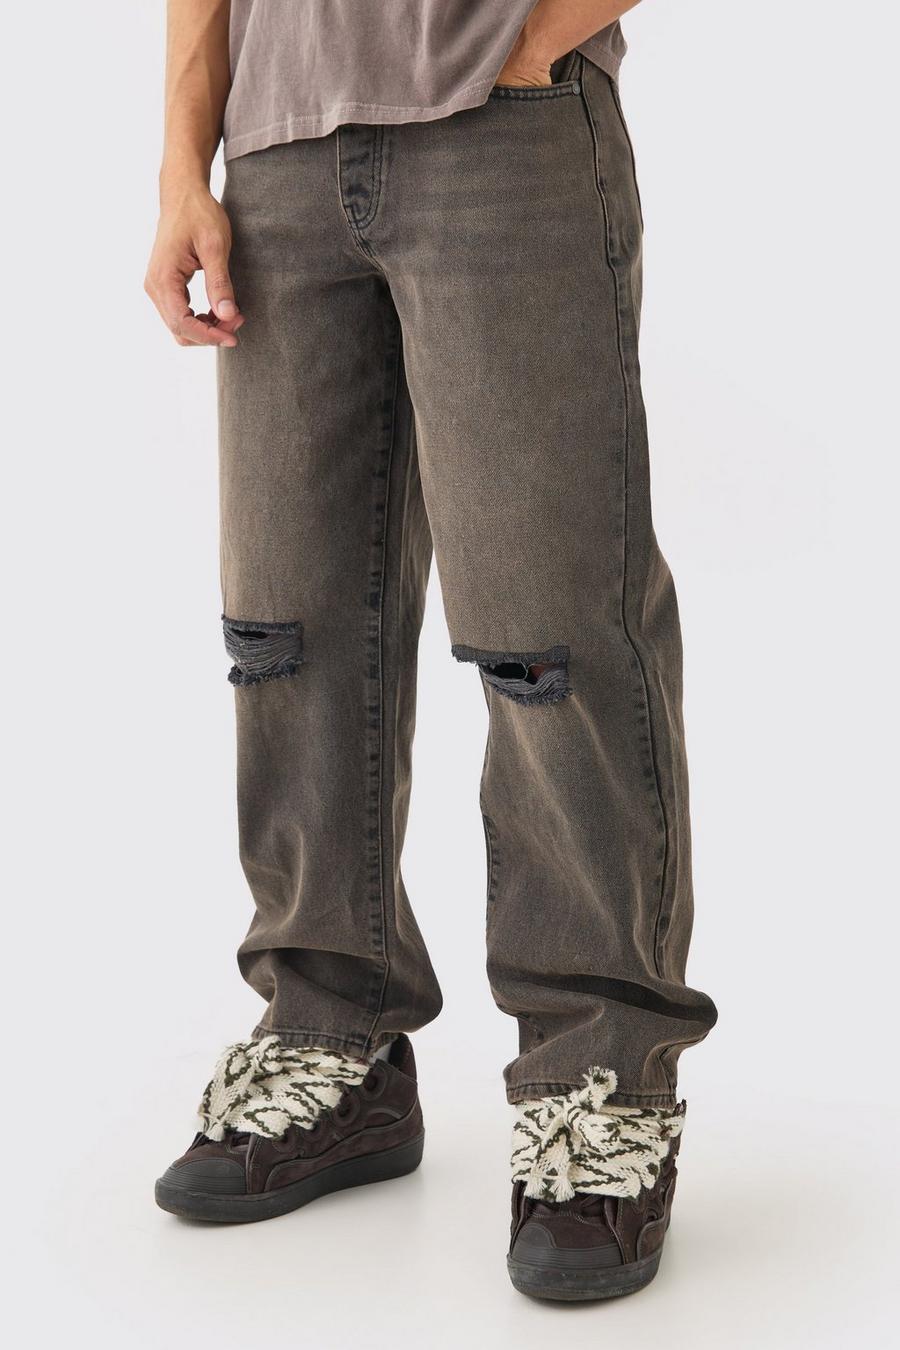 Lockere braune Jeans mit Riss am Knie, Brown